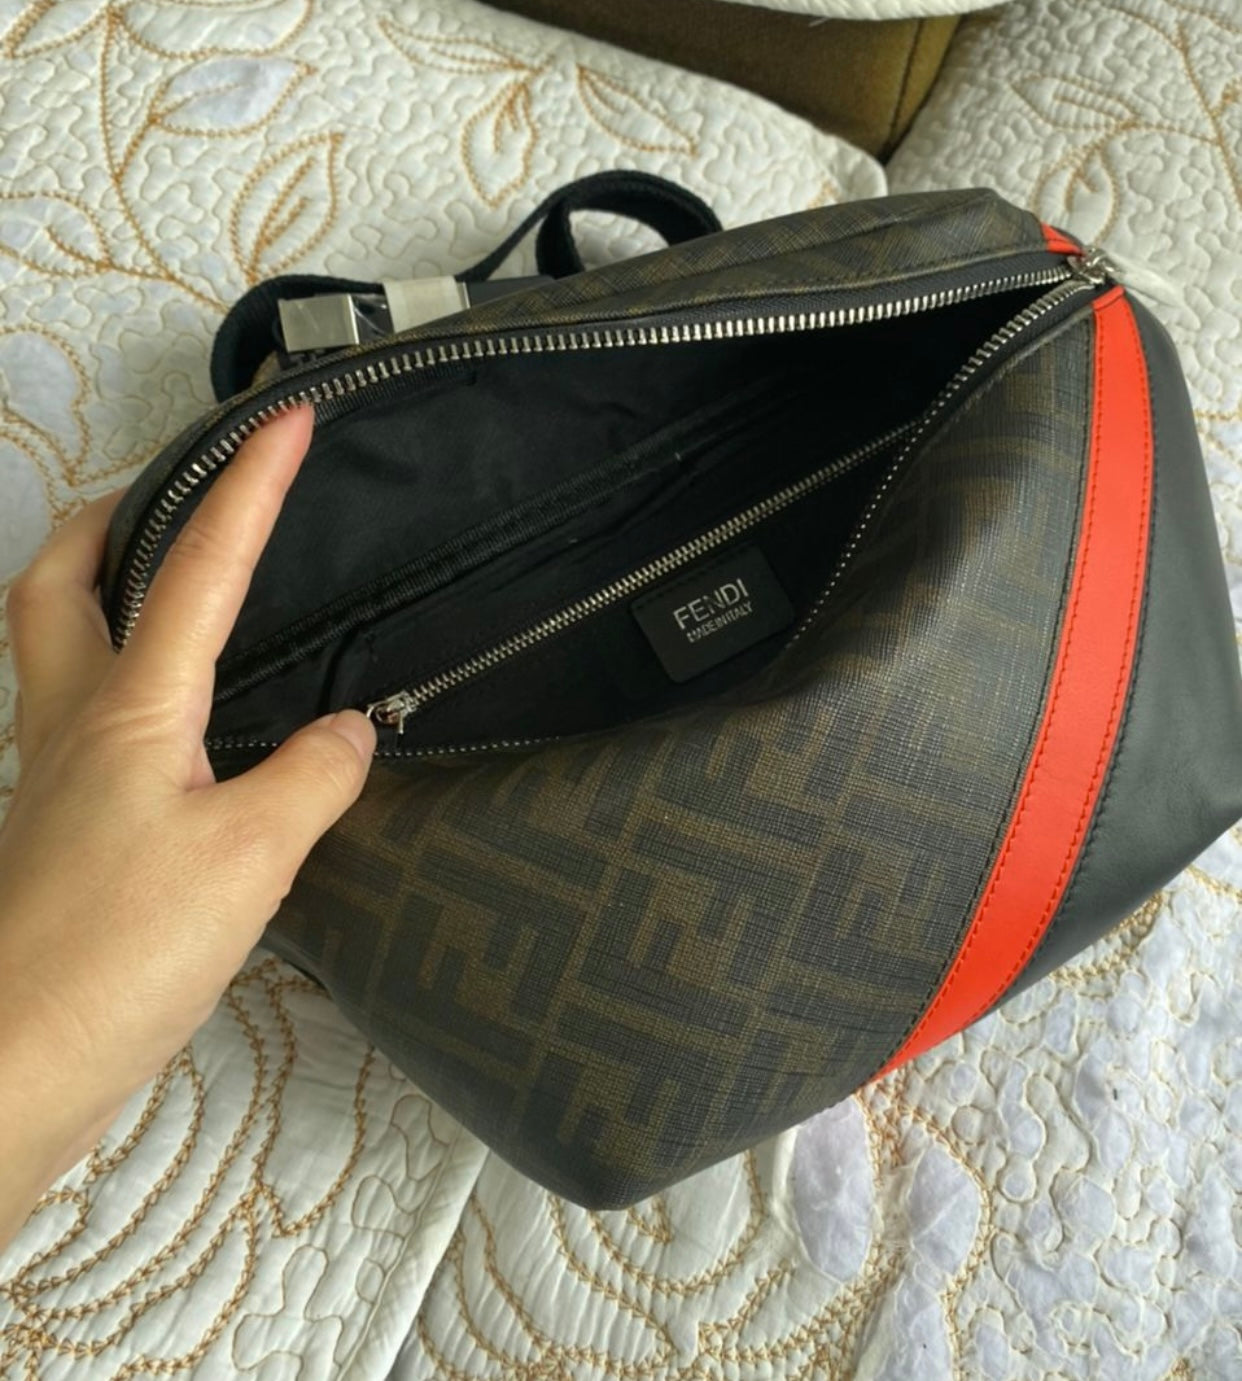 Belt Bag In FF Motif Fabric Brown/Red